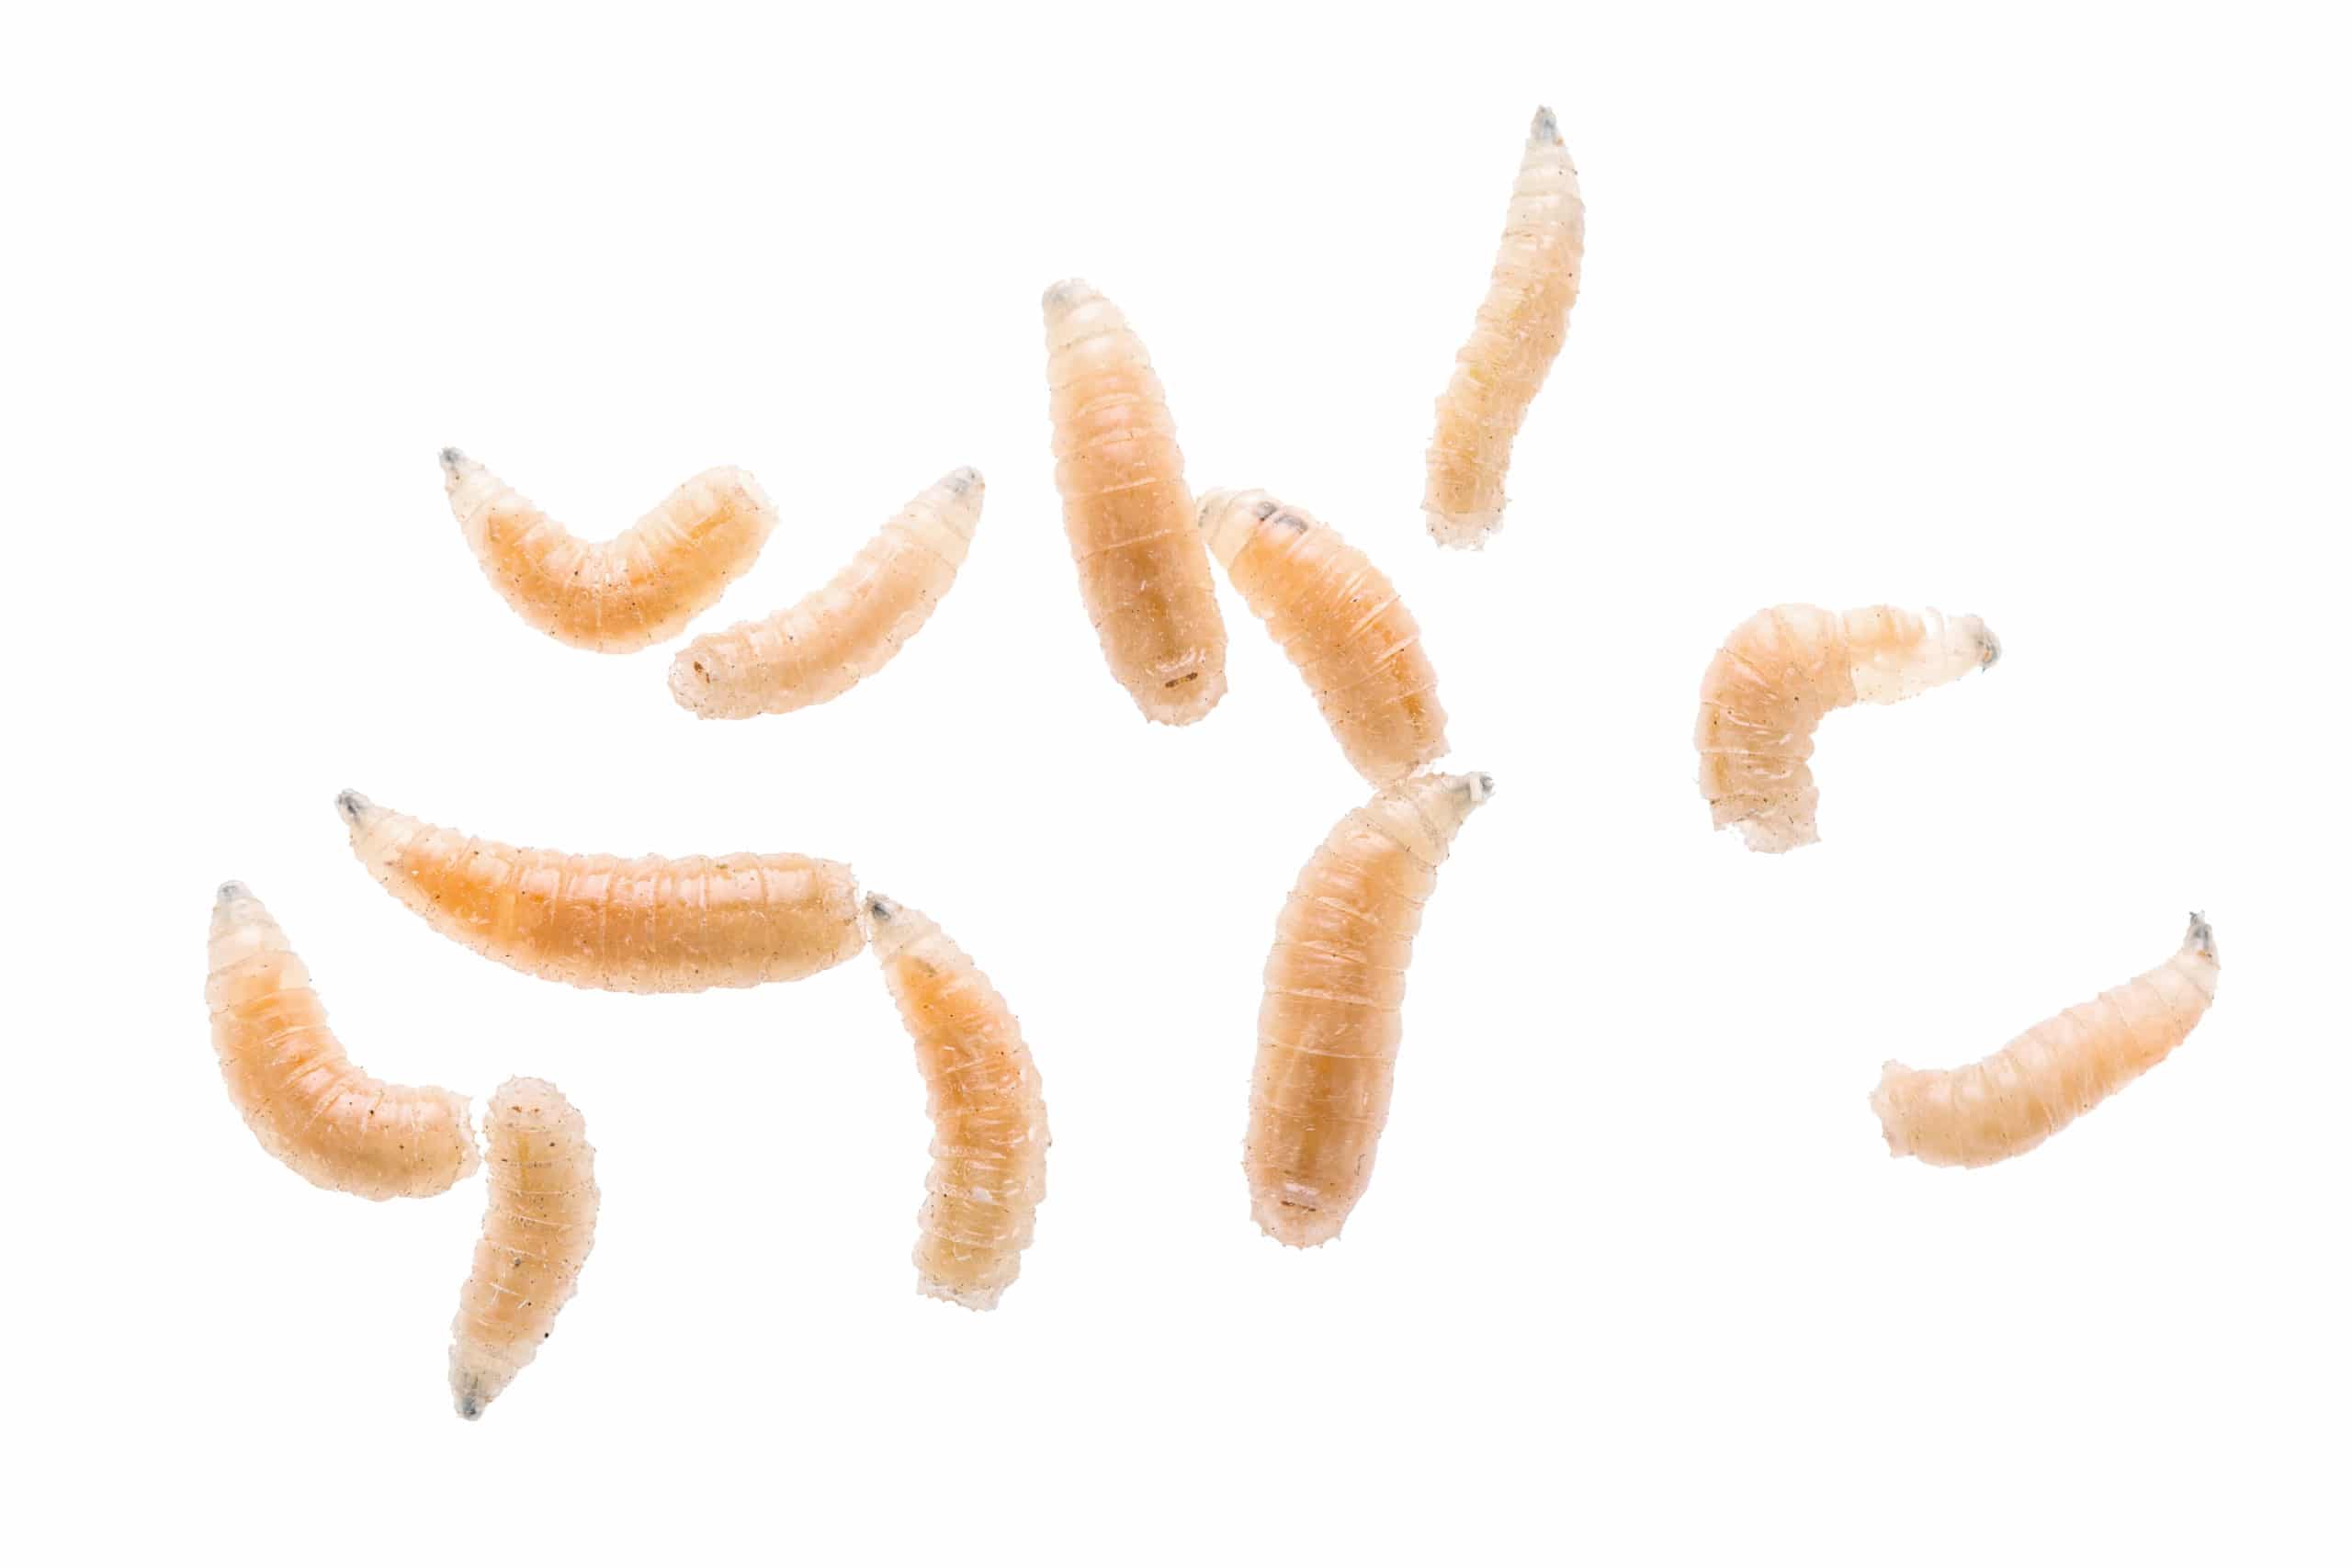 Maggot fly larva